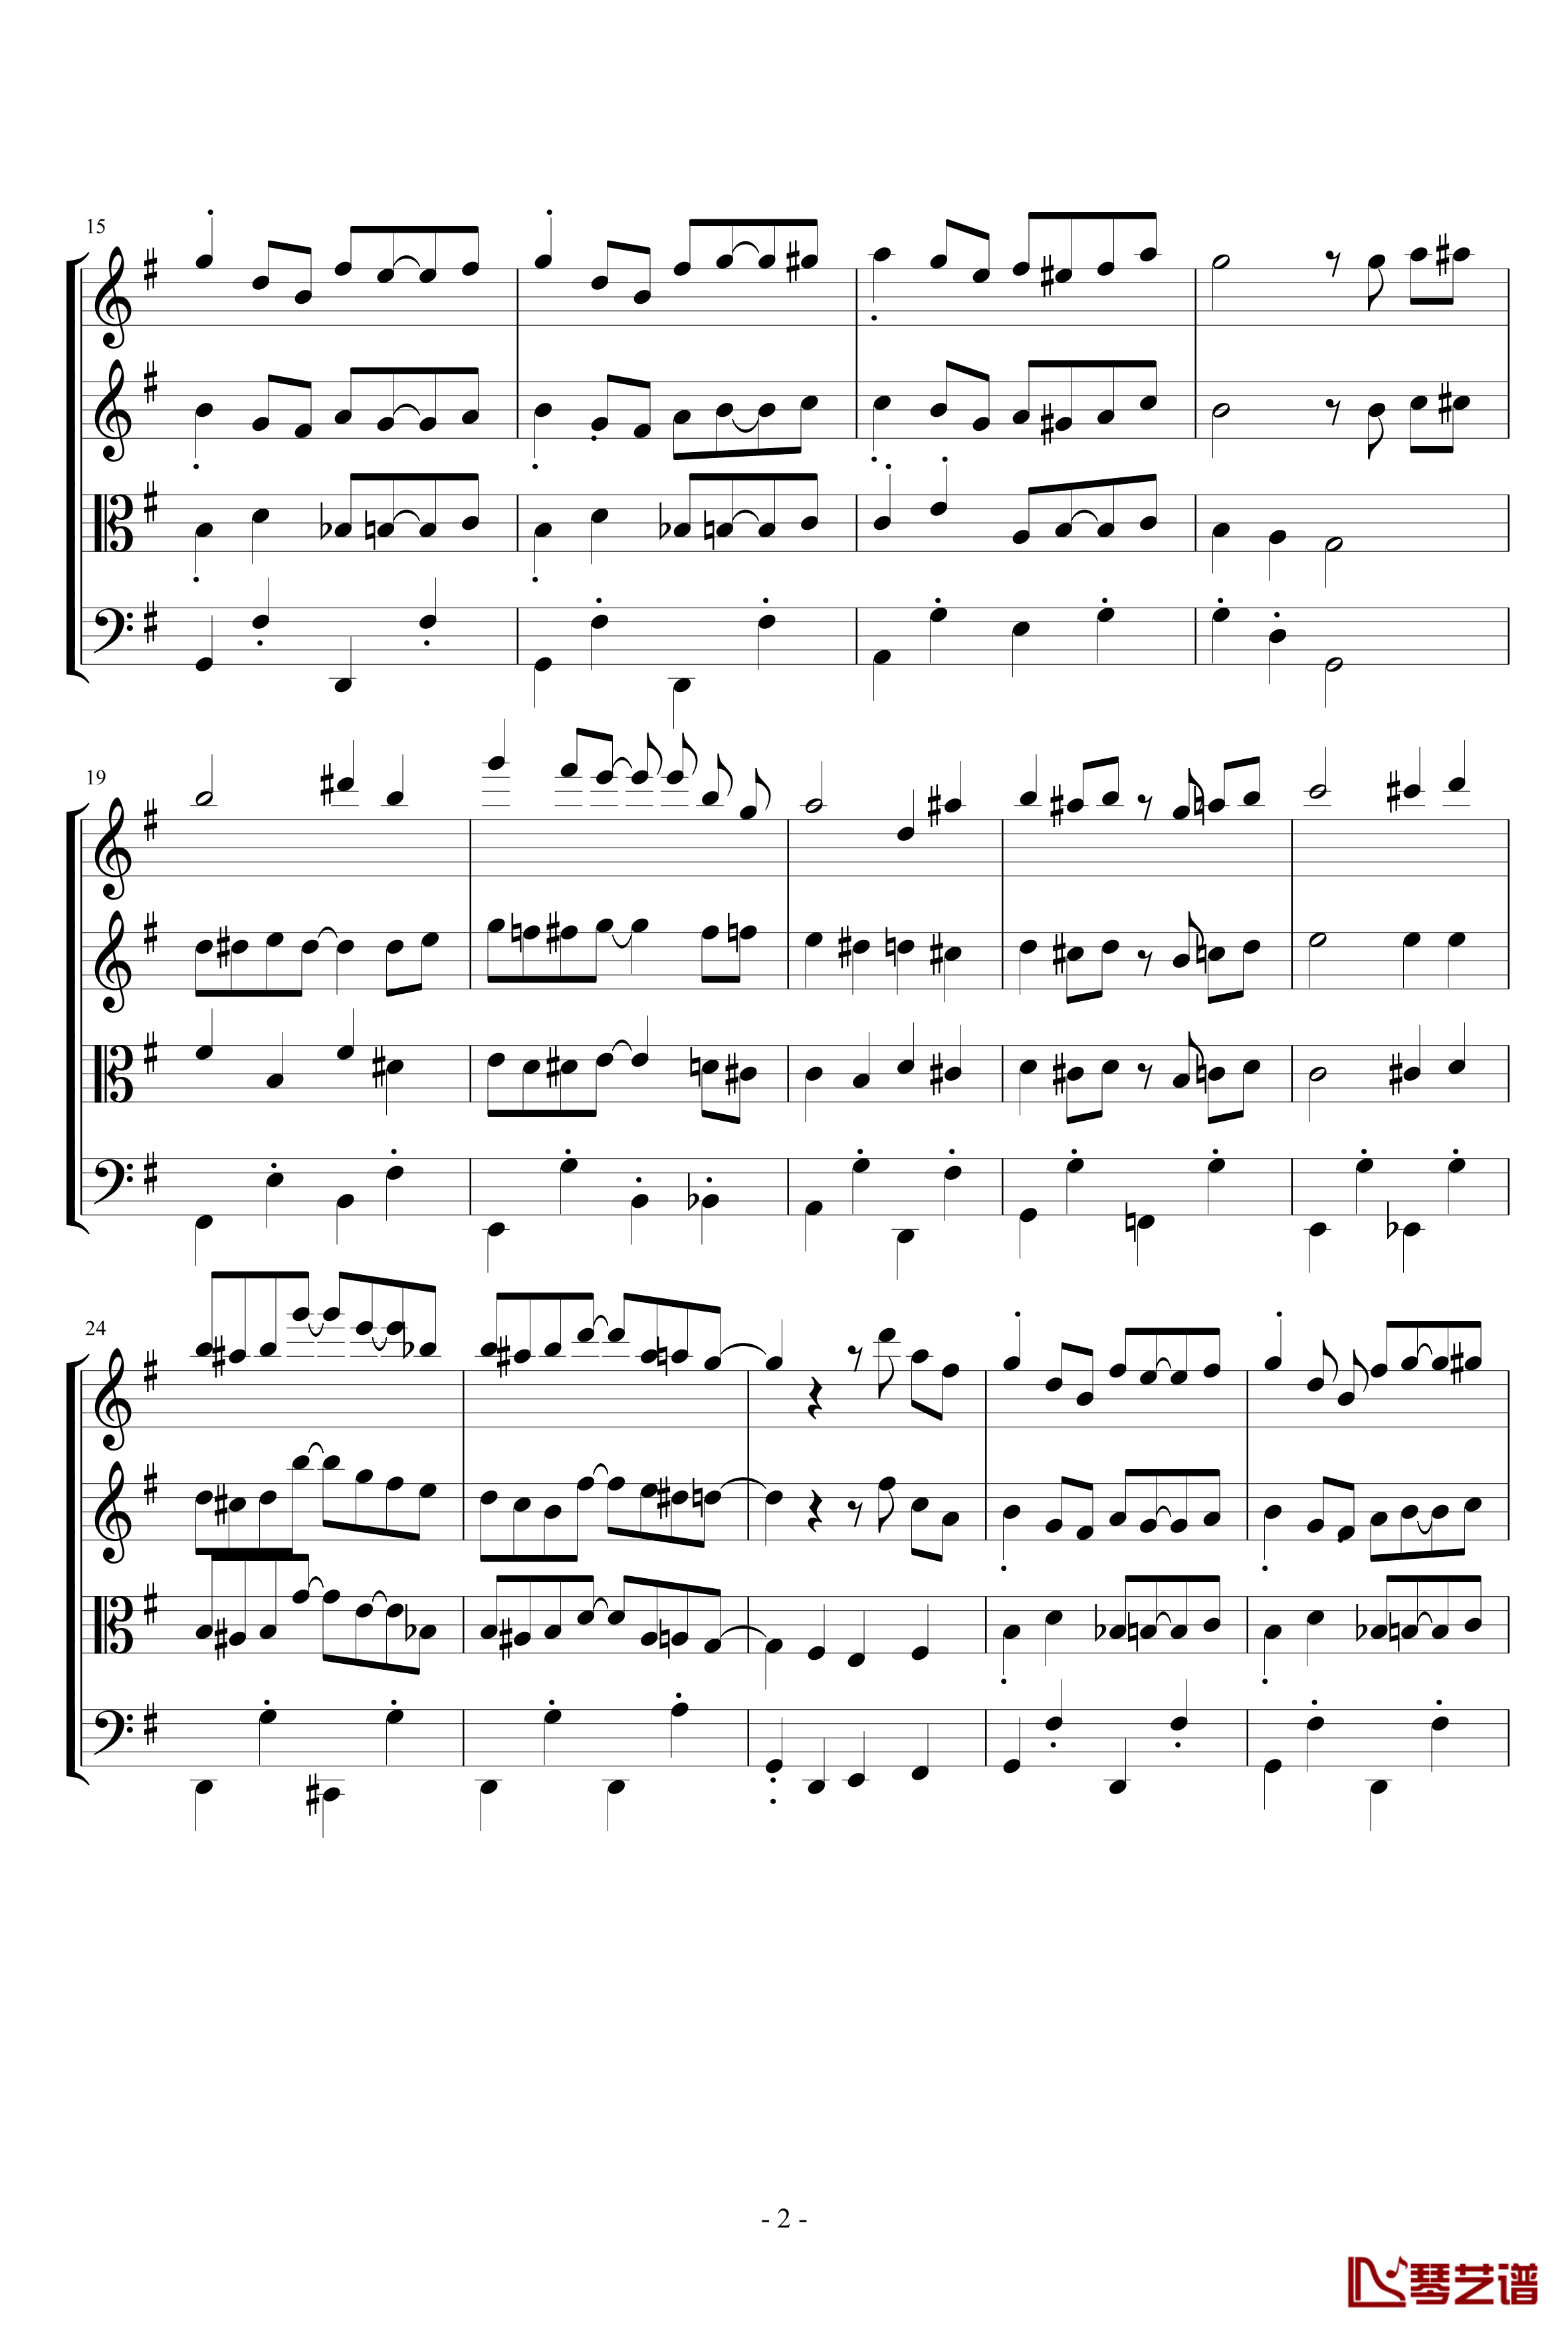 苏格兰垂耳兔钢琴谱-四重奏版-EdwardLeon2